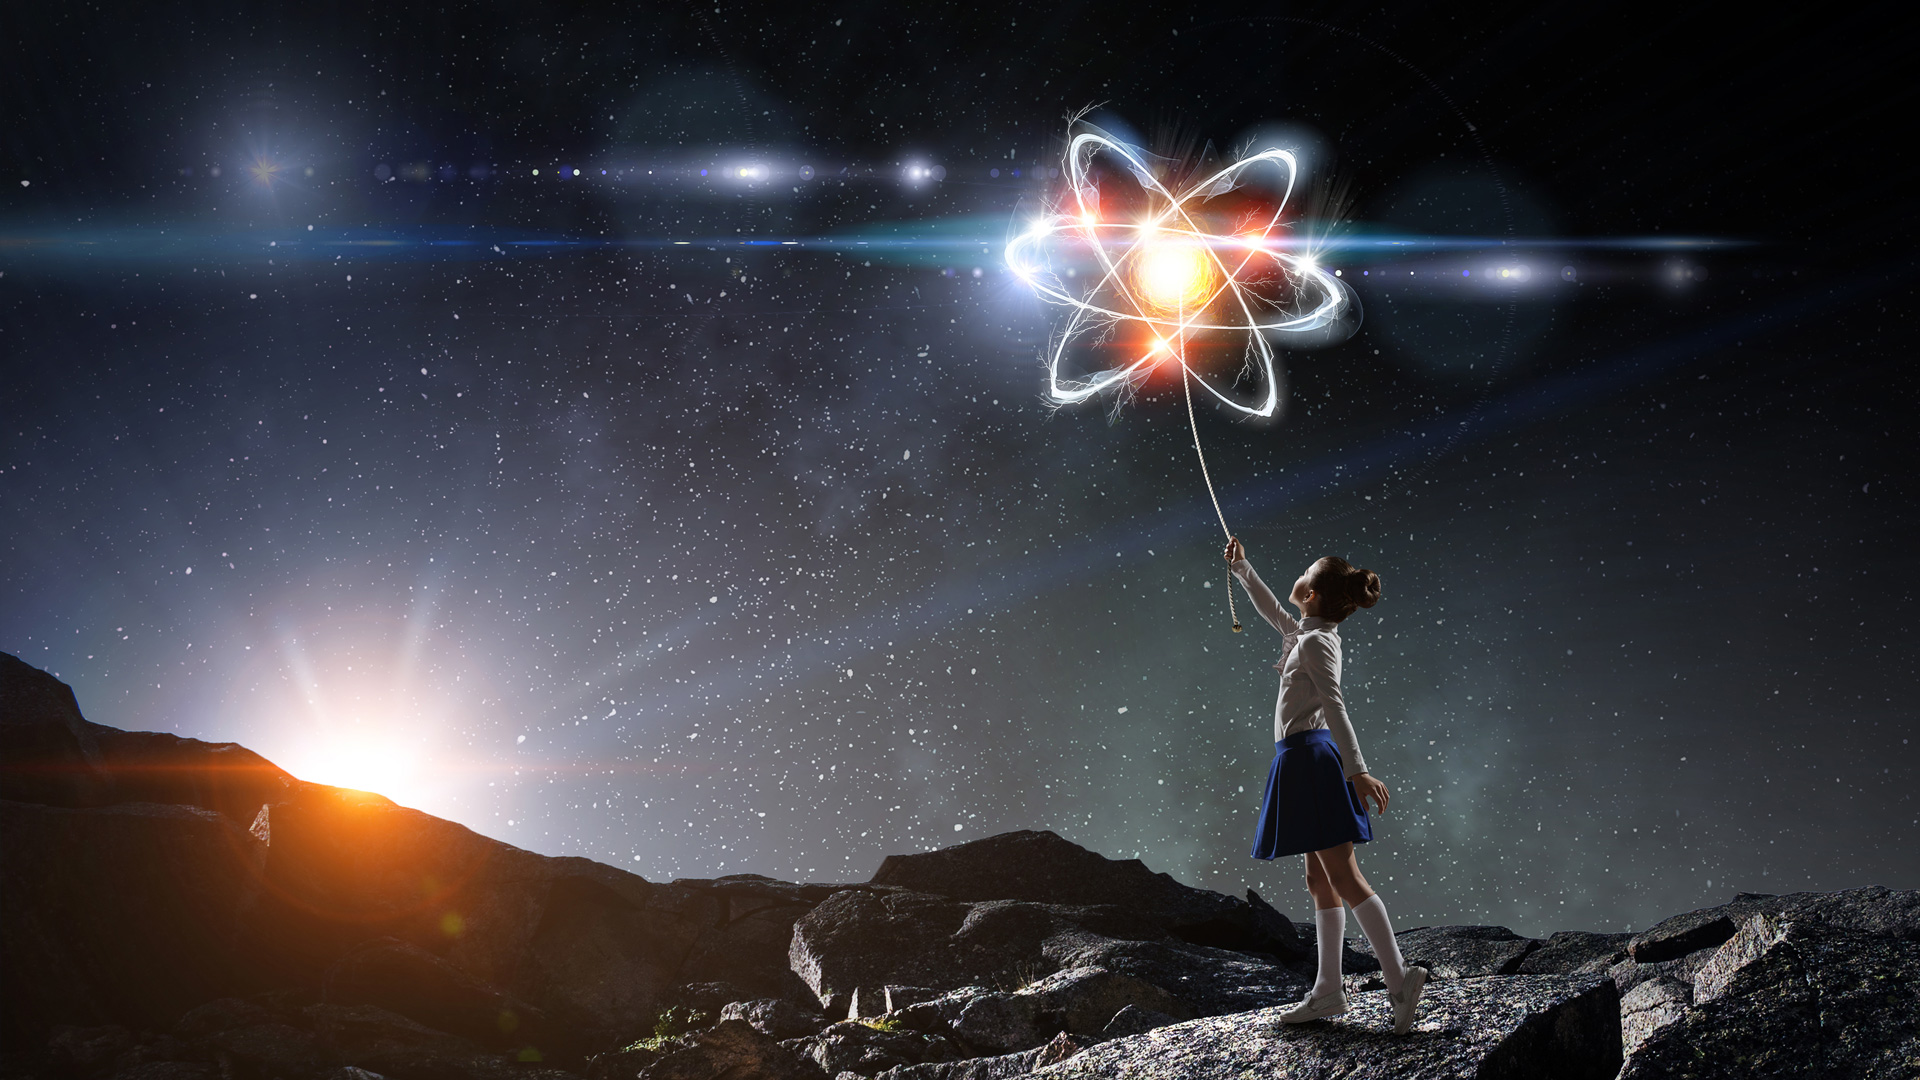 Abstrakcyjne zdjęcie dziewczynki trzymającej mieniący się atom jak balonik. W tle górski krajobraz oraz gwiaździste niebo.